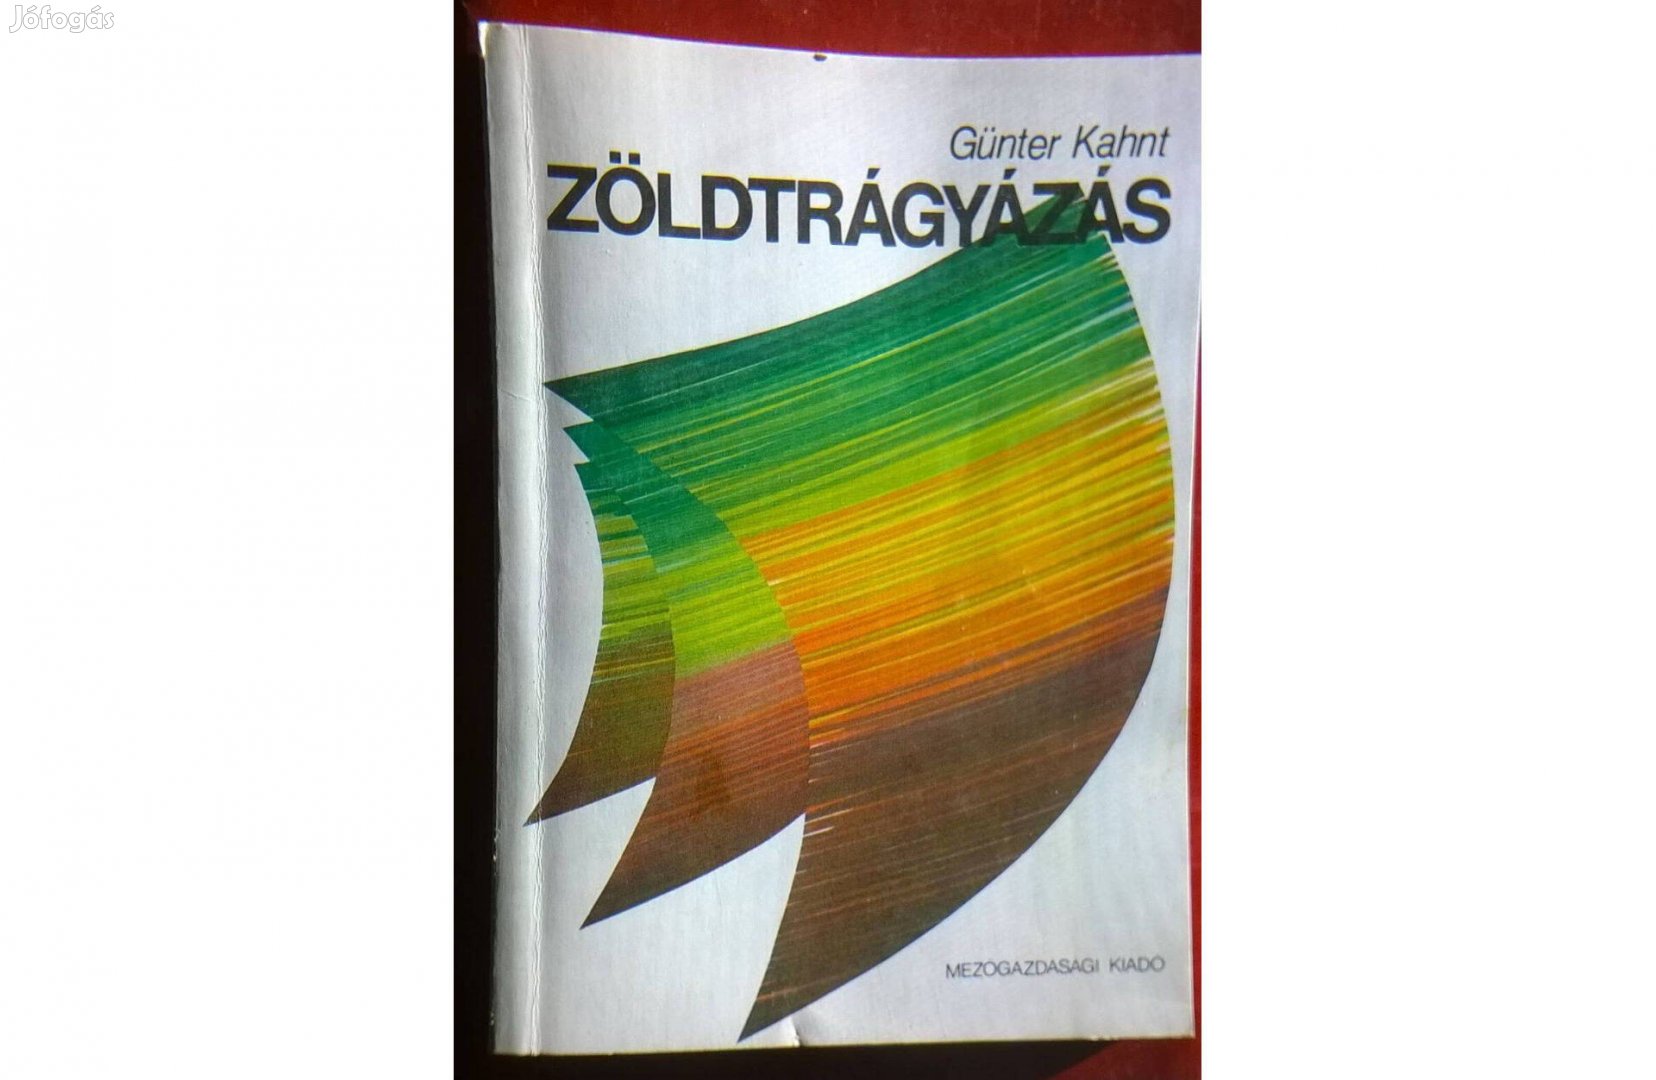 Zöldtrágyázás - Günter Kahnt könyve , Mg.-i kiadó , 1986